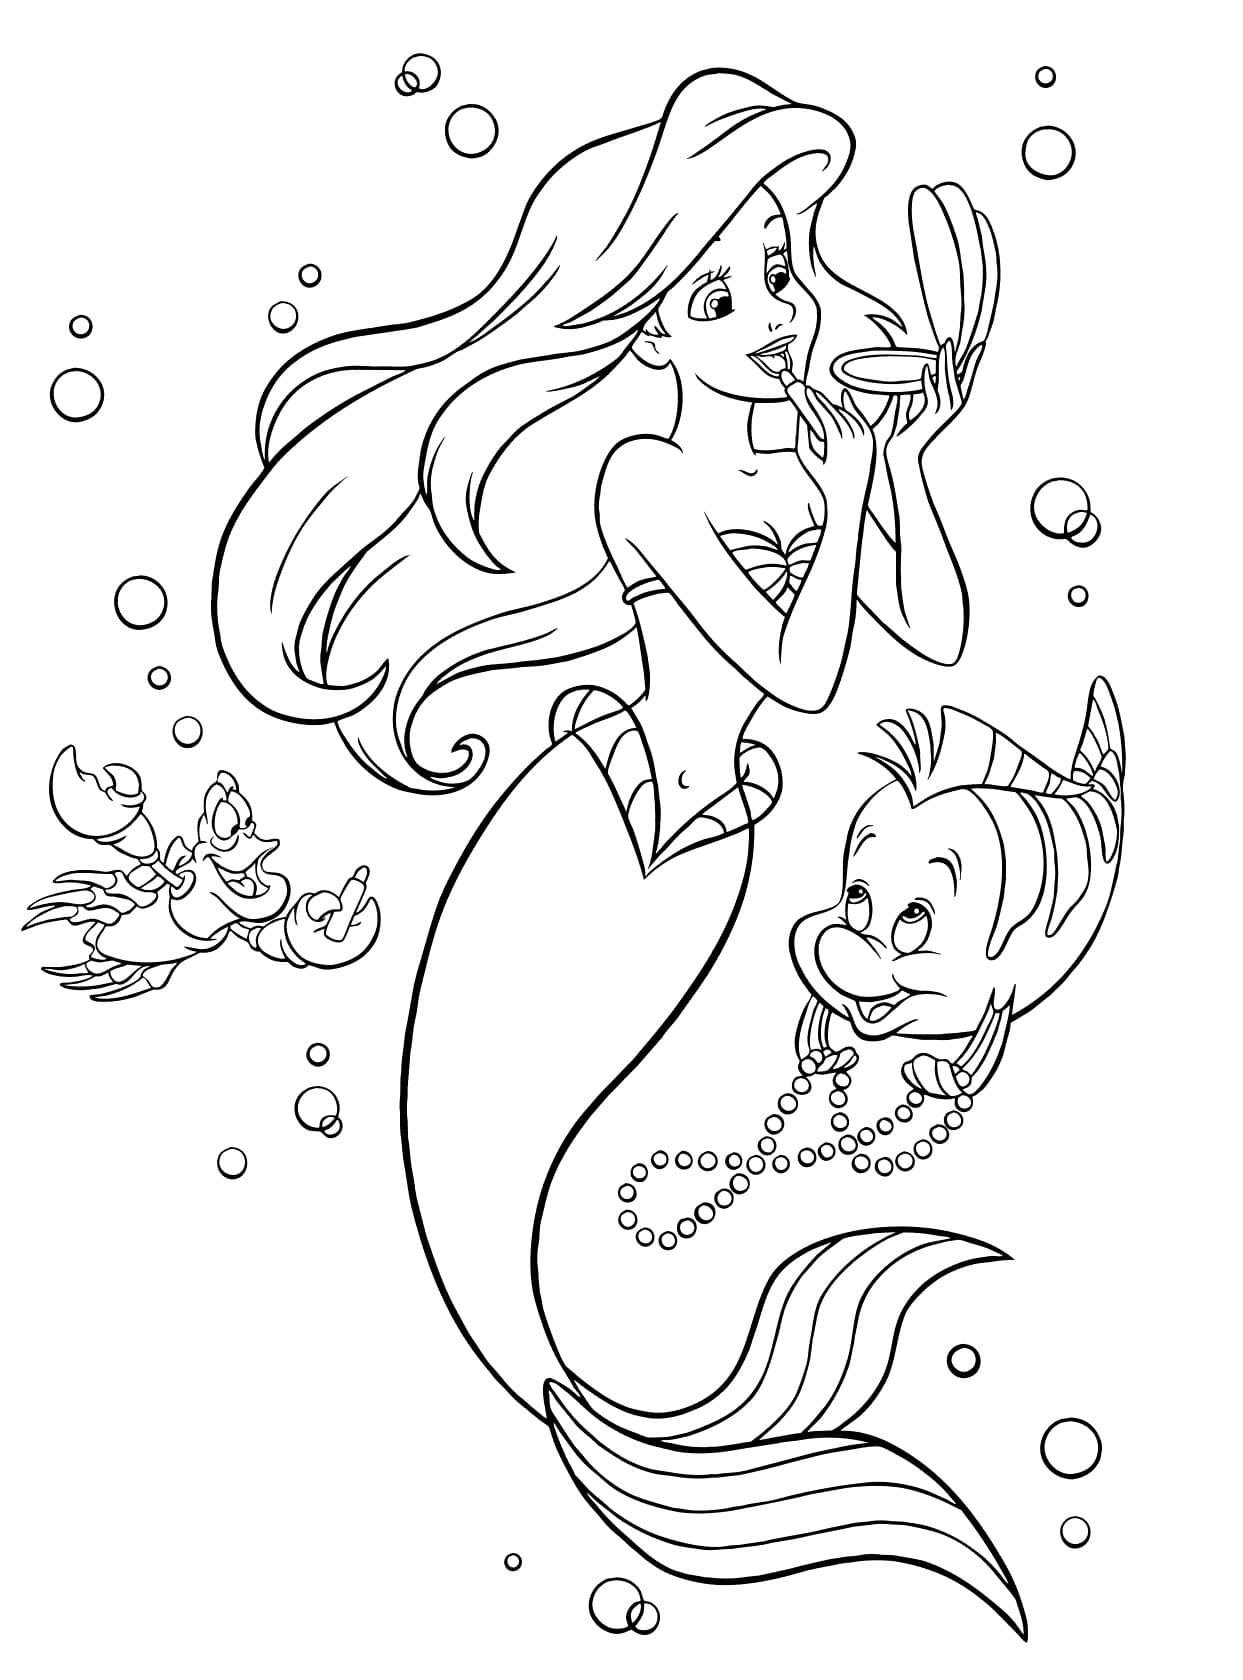 Dibujo de Ariel, Sebastian, Flounder de La sirenita para imprimir y colorear